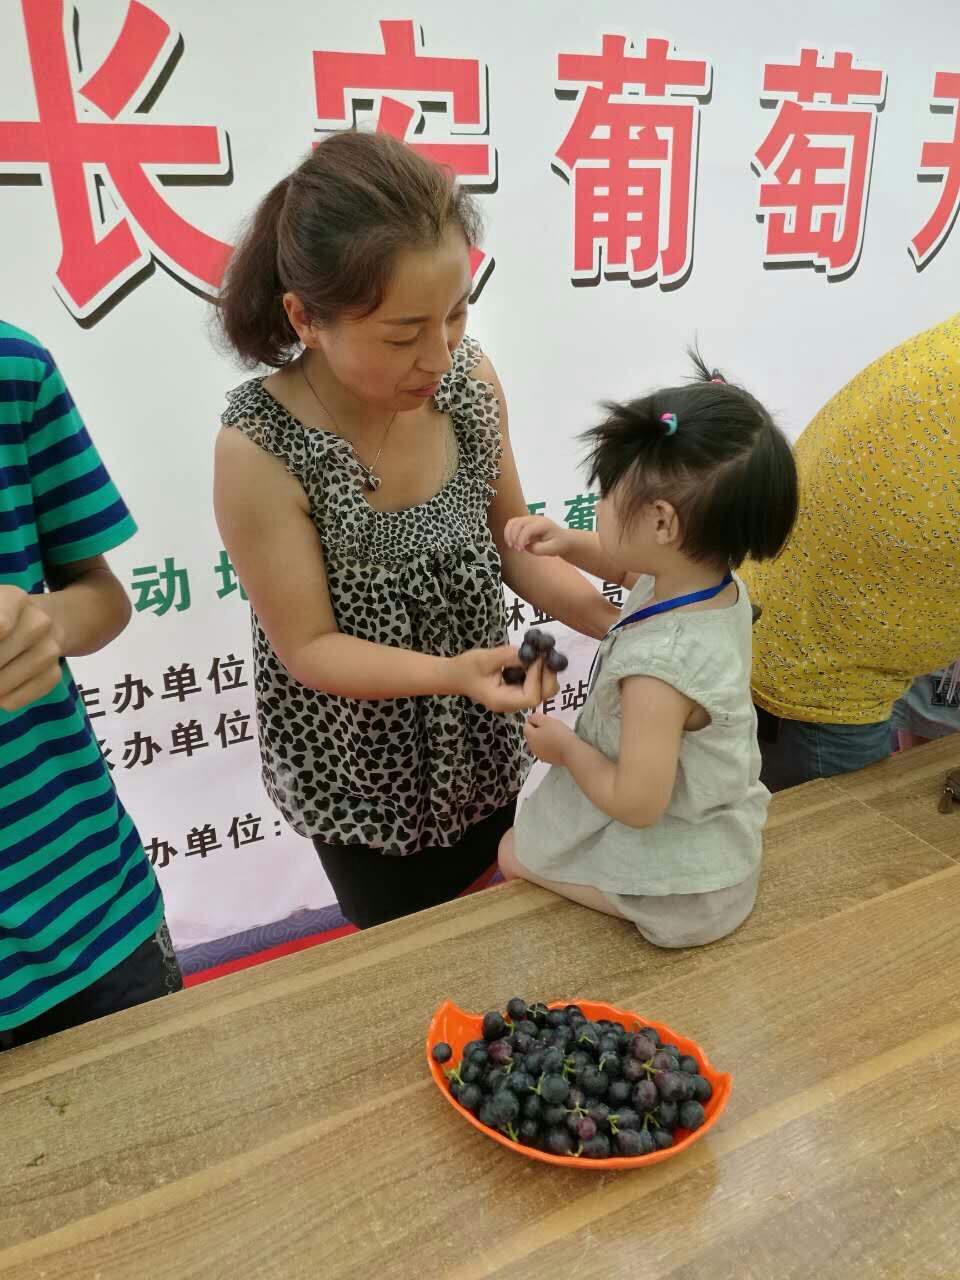 葡萄深受大人小孩的喜爱